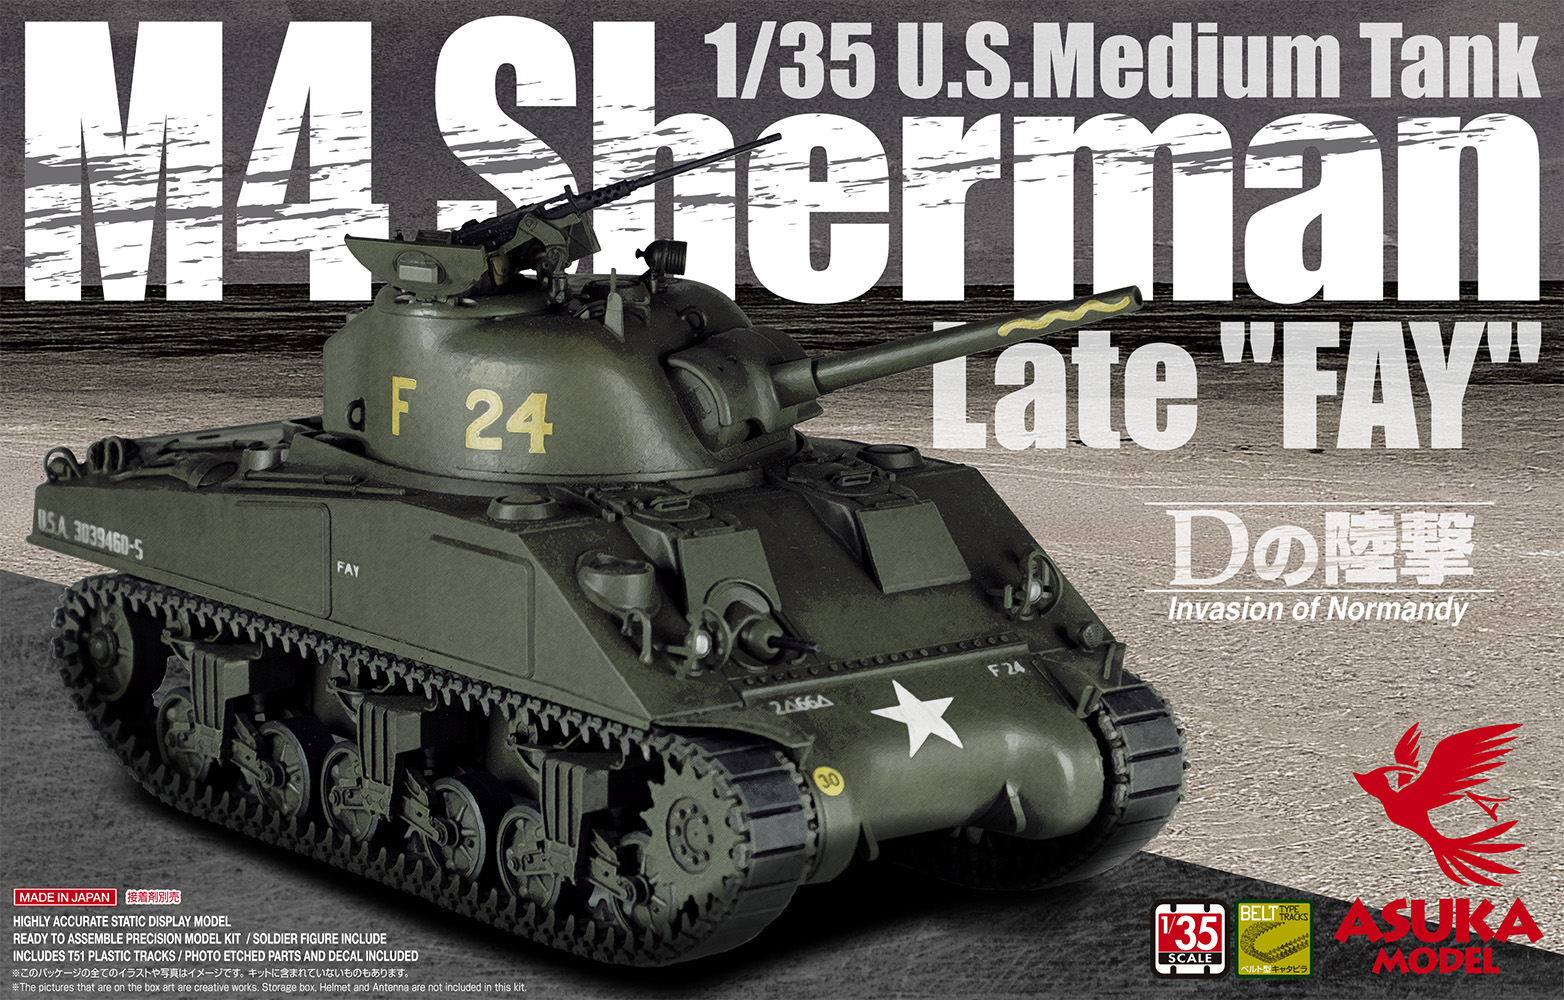 1/35 U.S. Medium Tank M4 Sherman Late “FAY” #35-032 | Asukamodel 